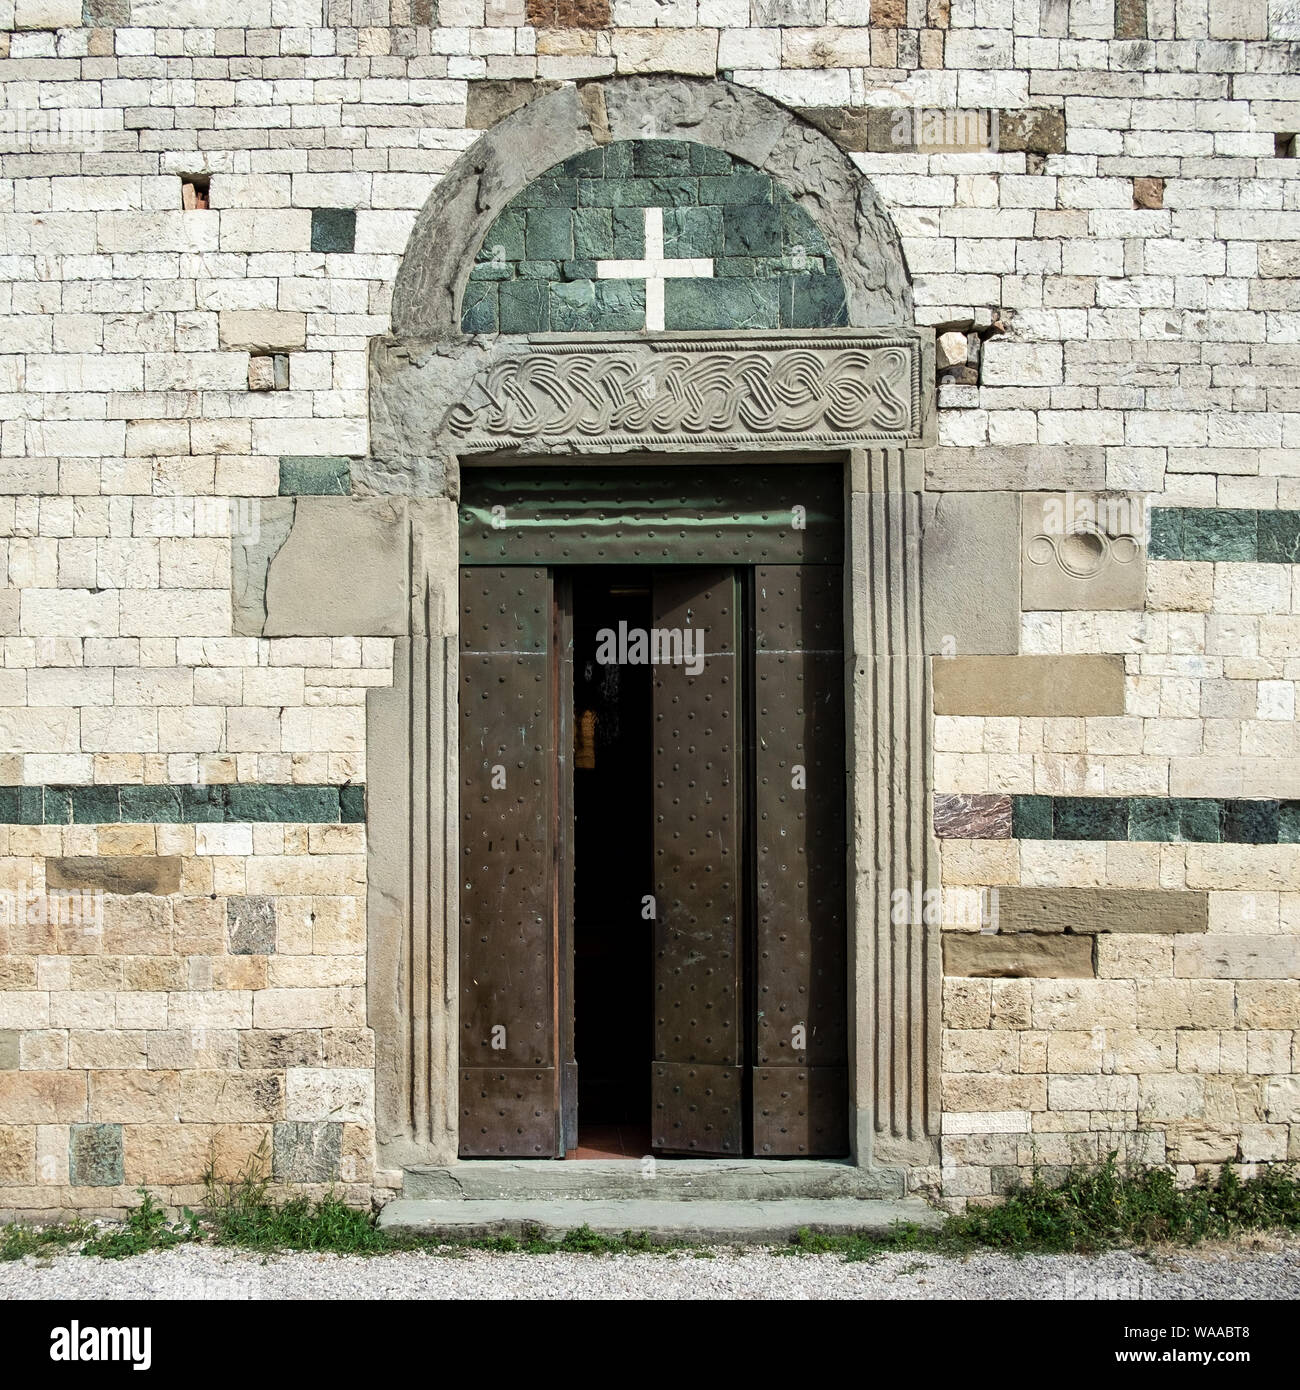 Dettaglio della facciata della chiesa romanica di Sant'Agata. Sant'Agata, provincia di Firenze, Italia. Foto Stock